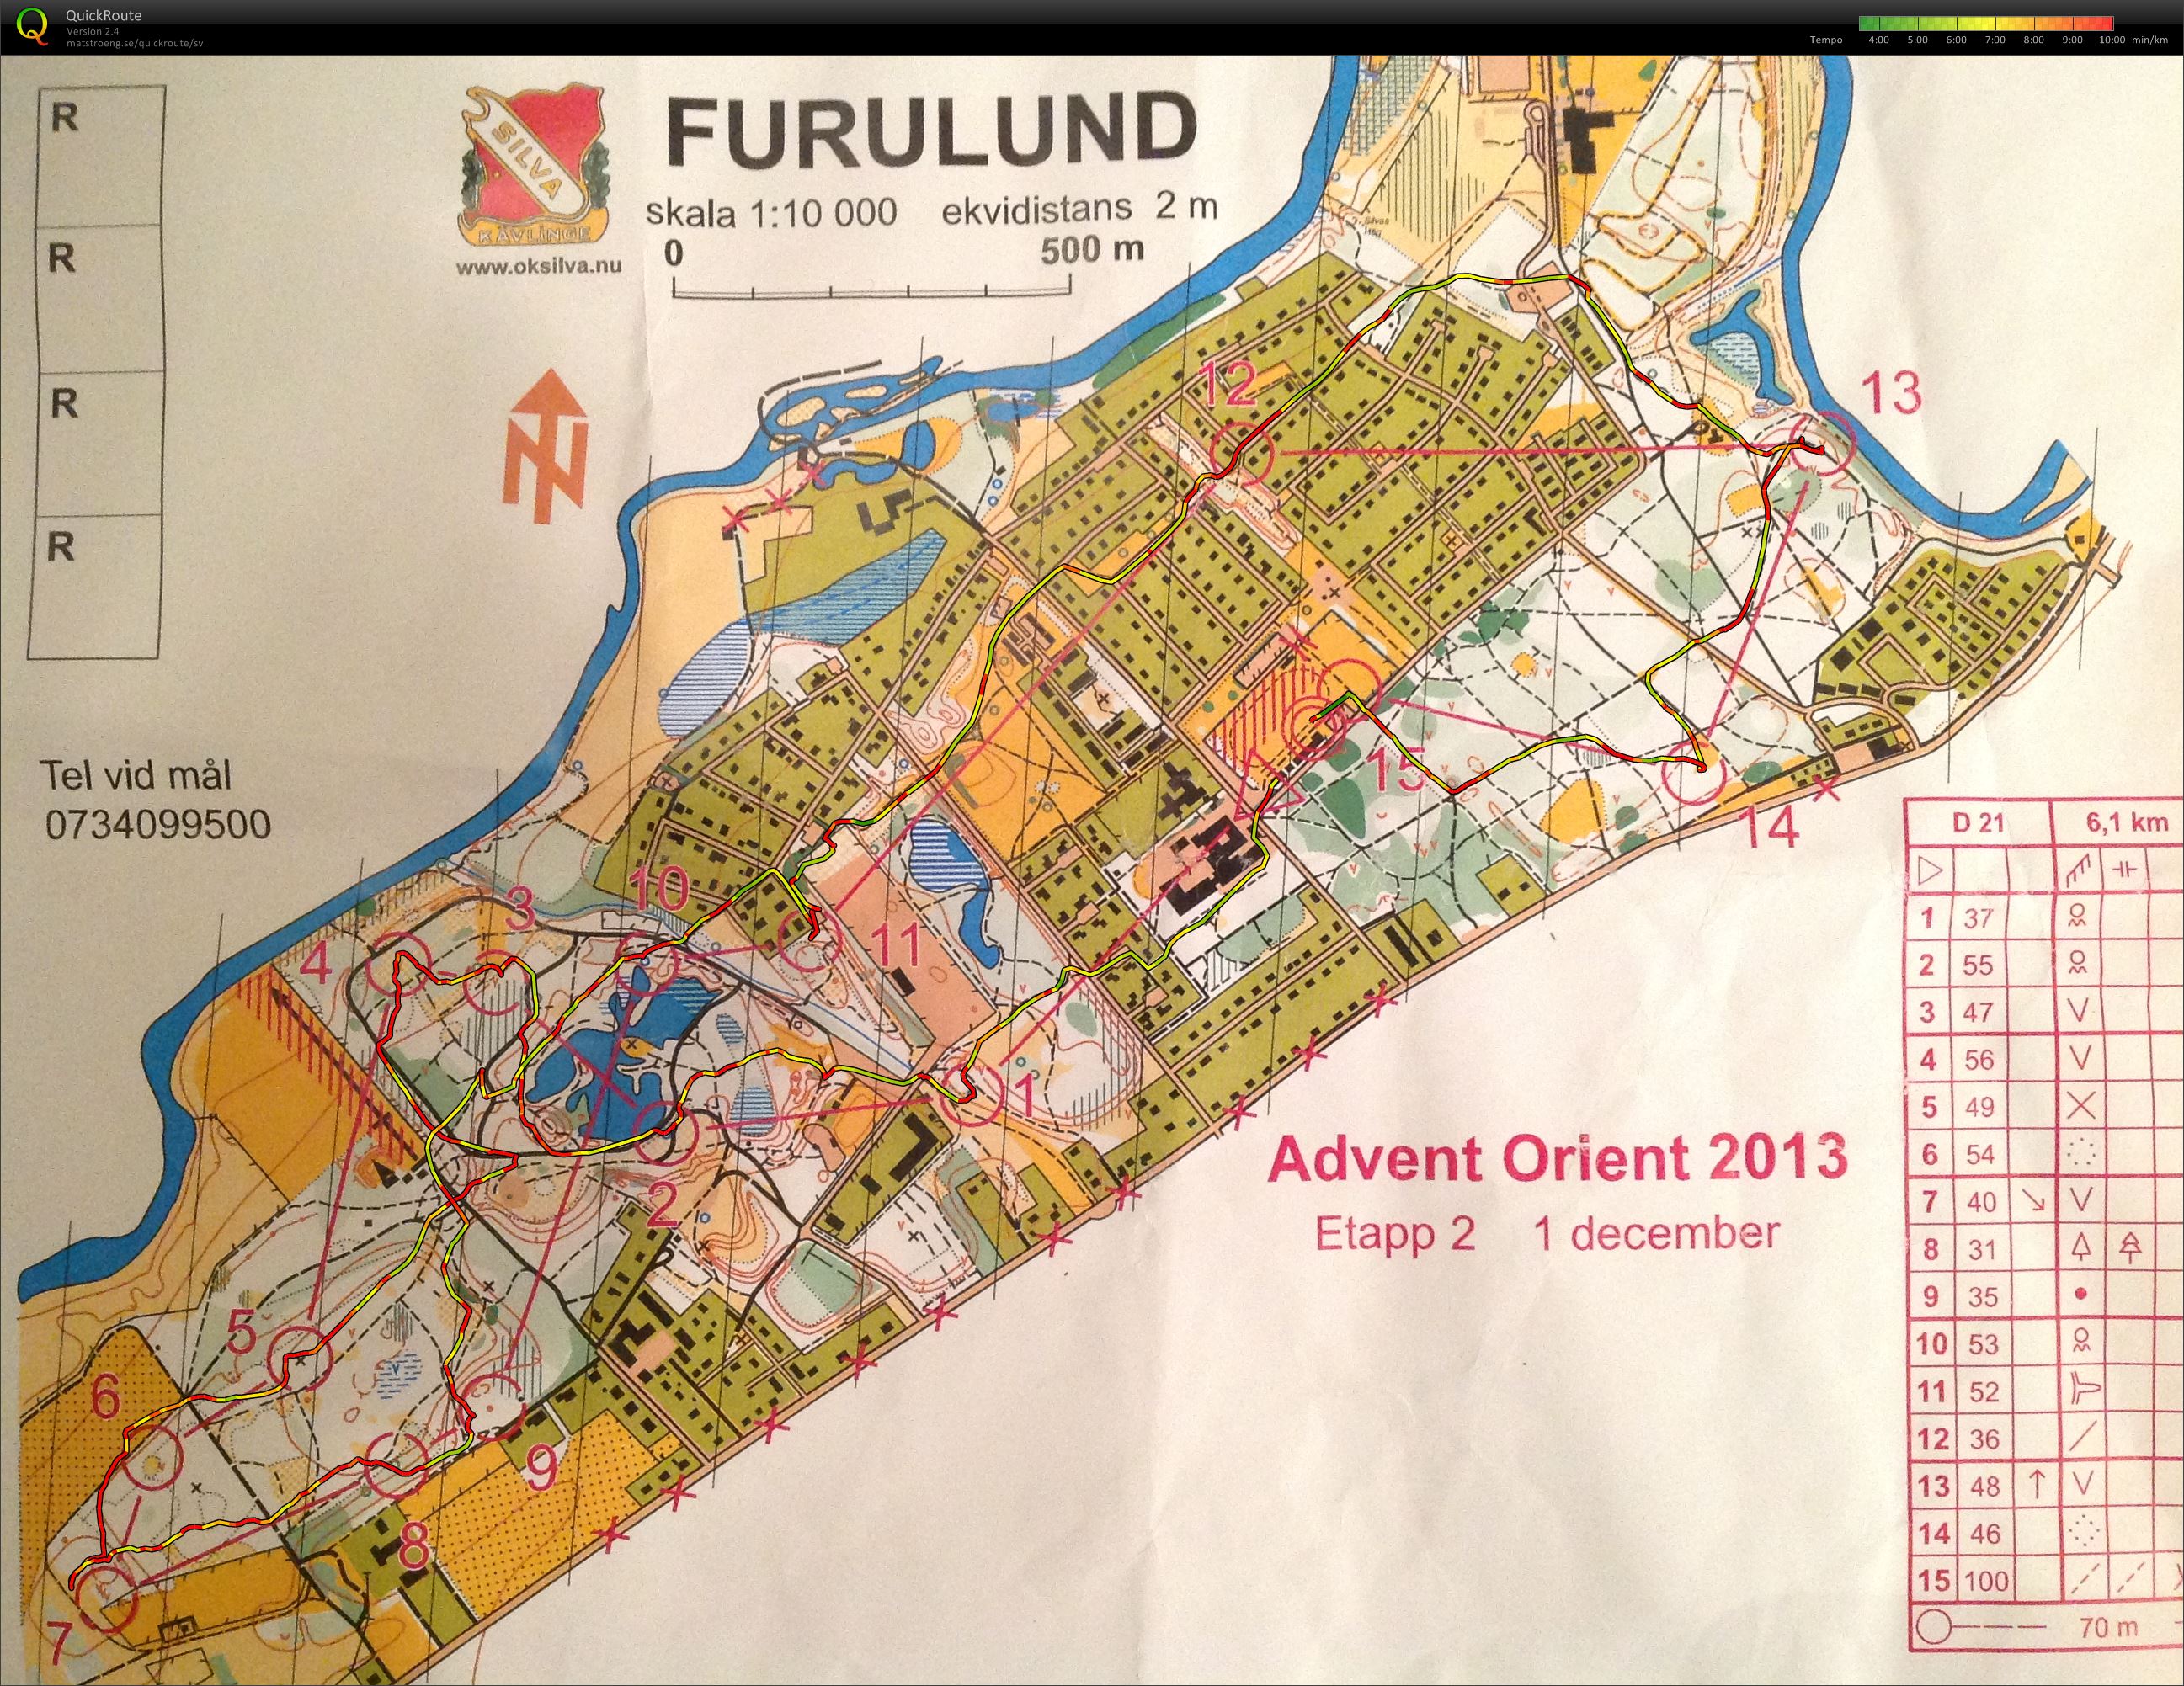 Advent Orient Furulund (01-12-2013)